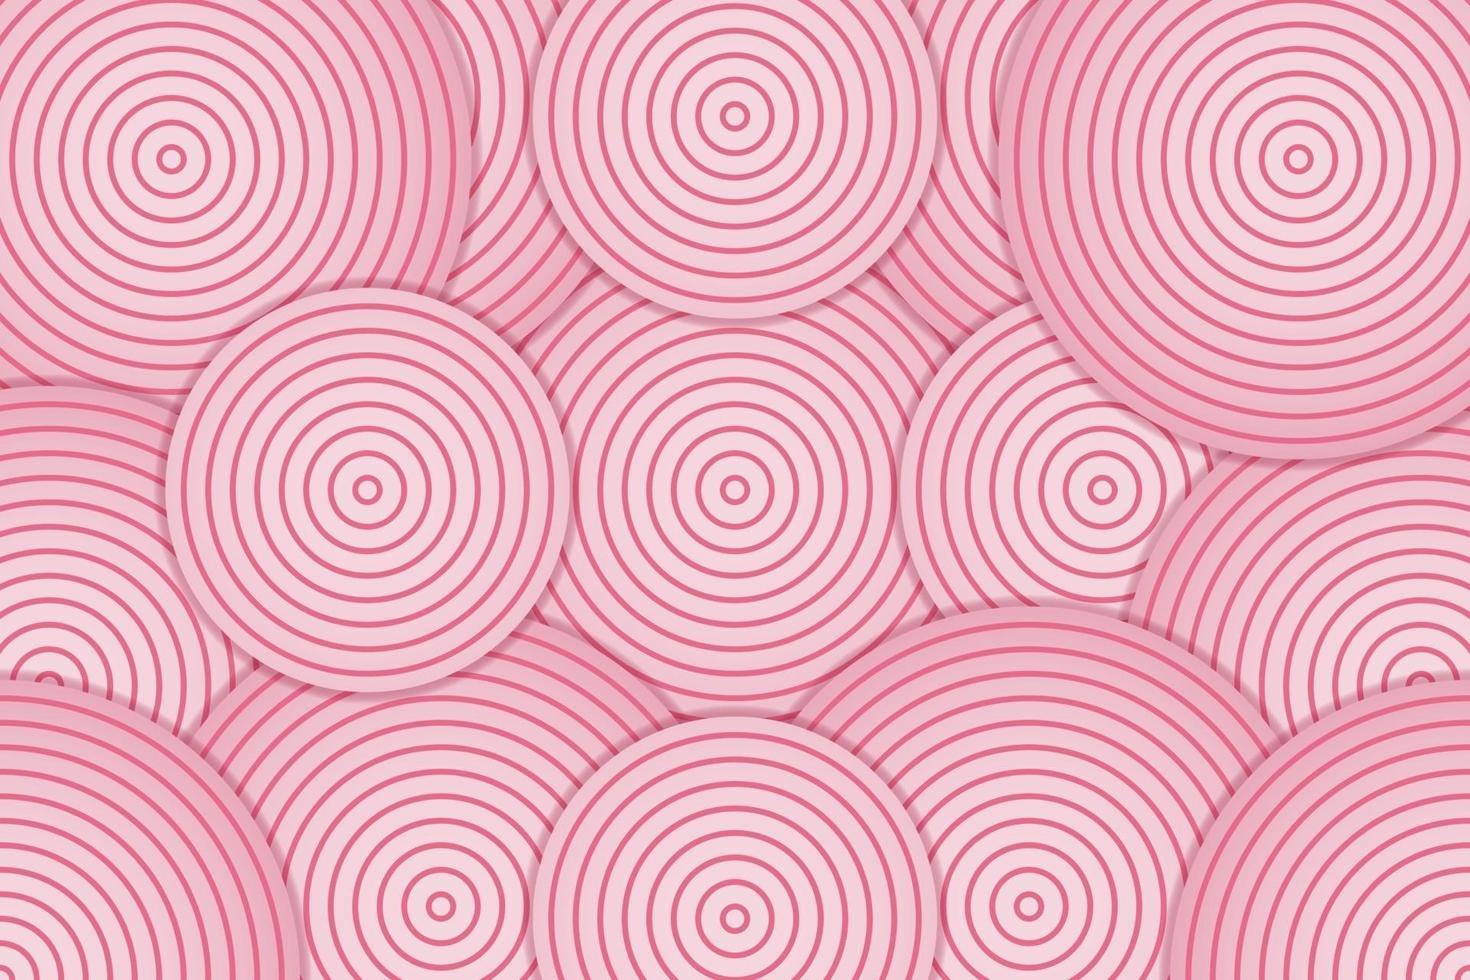 abstrait rose avec couche de cercle vecteur